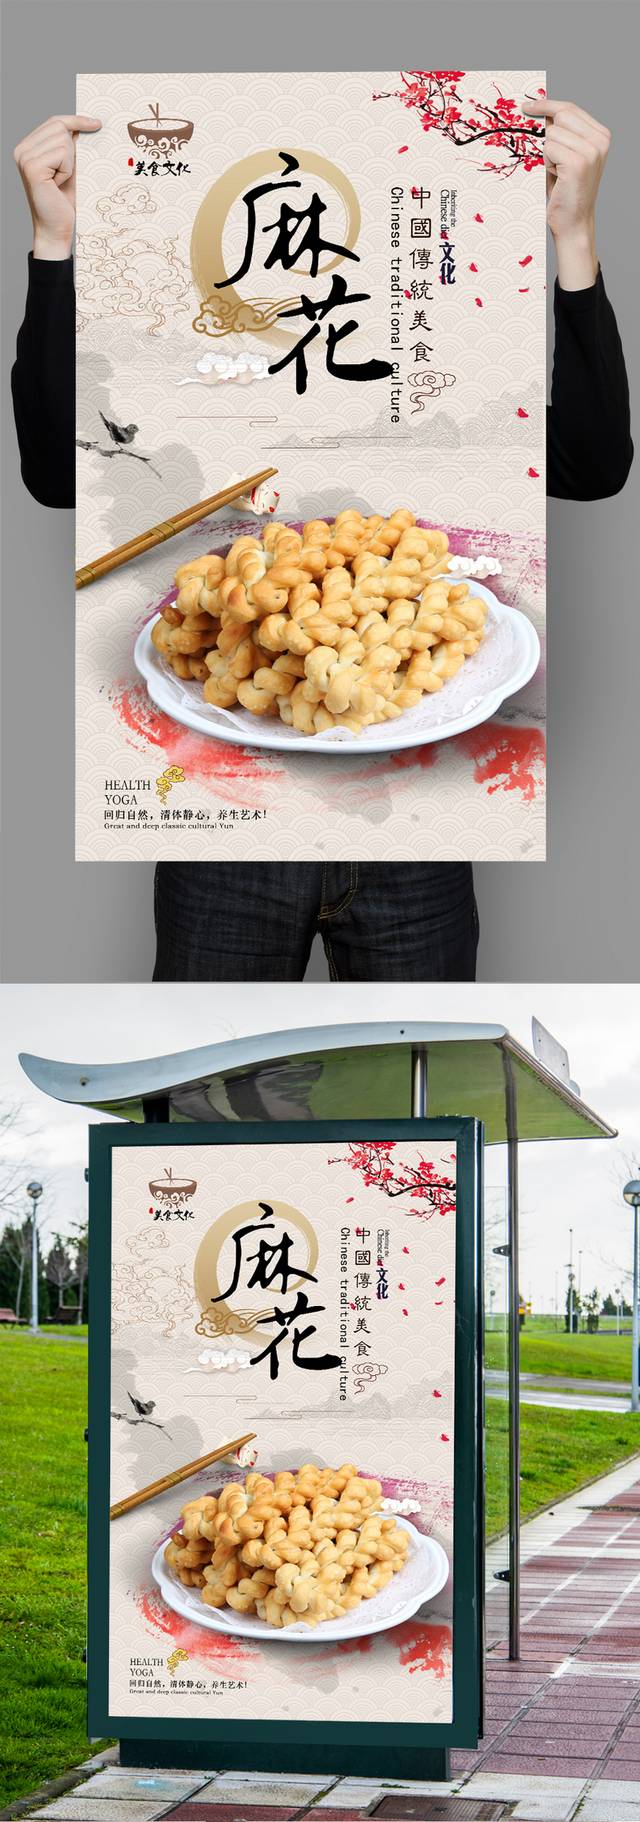 中式麻花宣传海报设计